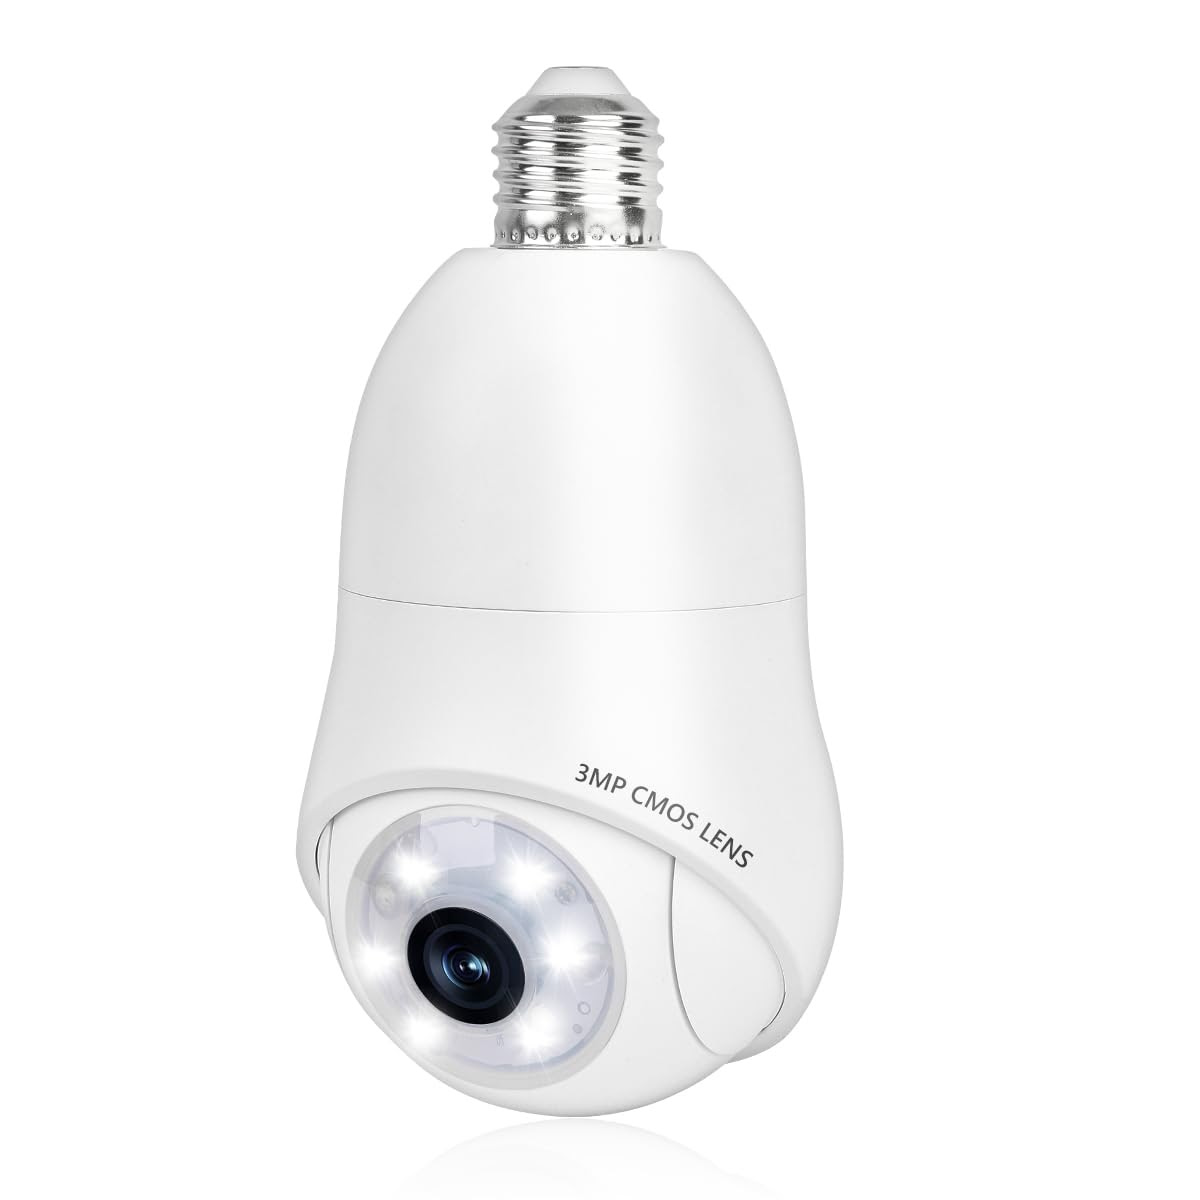 ACABEA Light Bulb Security Camera